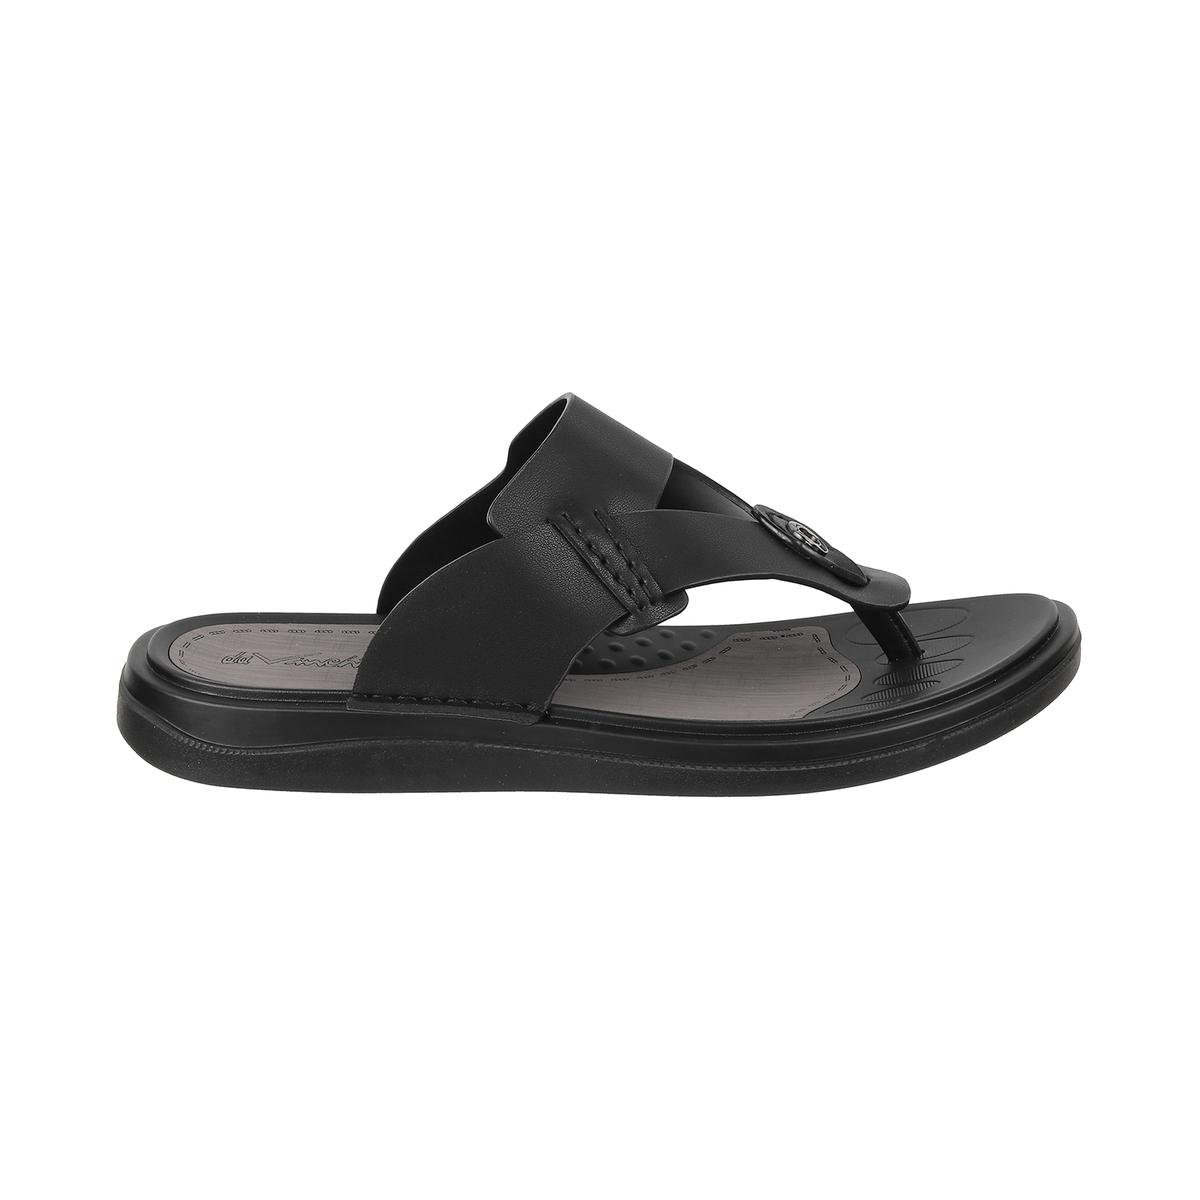 Buy Men Black Casual Slippers Online | SKU: 60-12-11-40-Metro Shoes